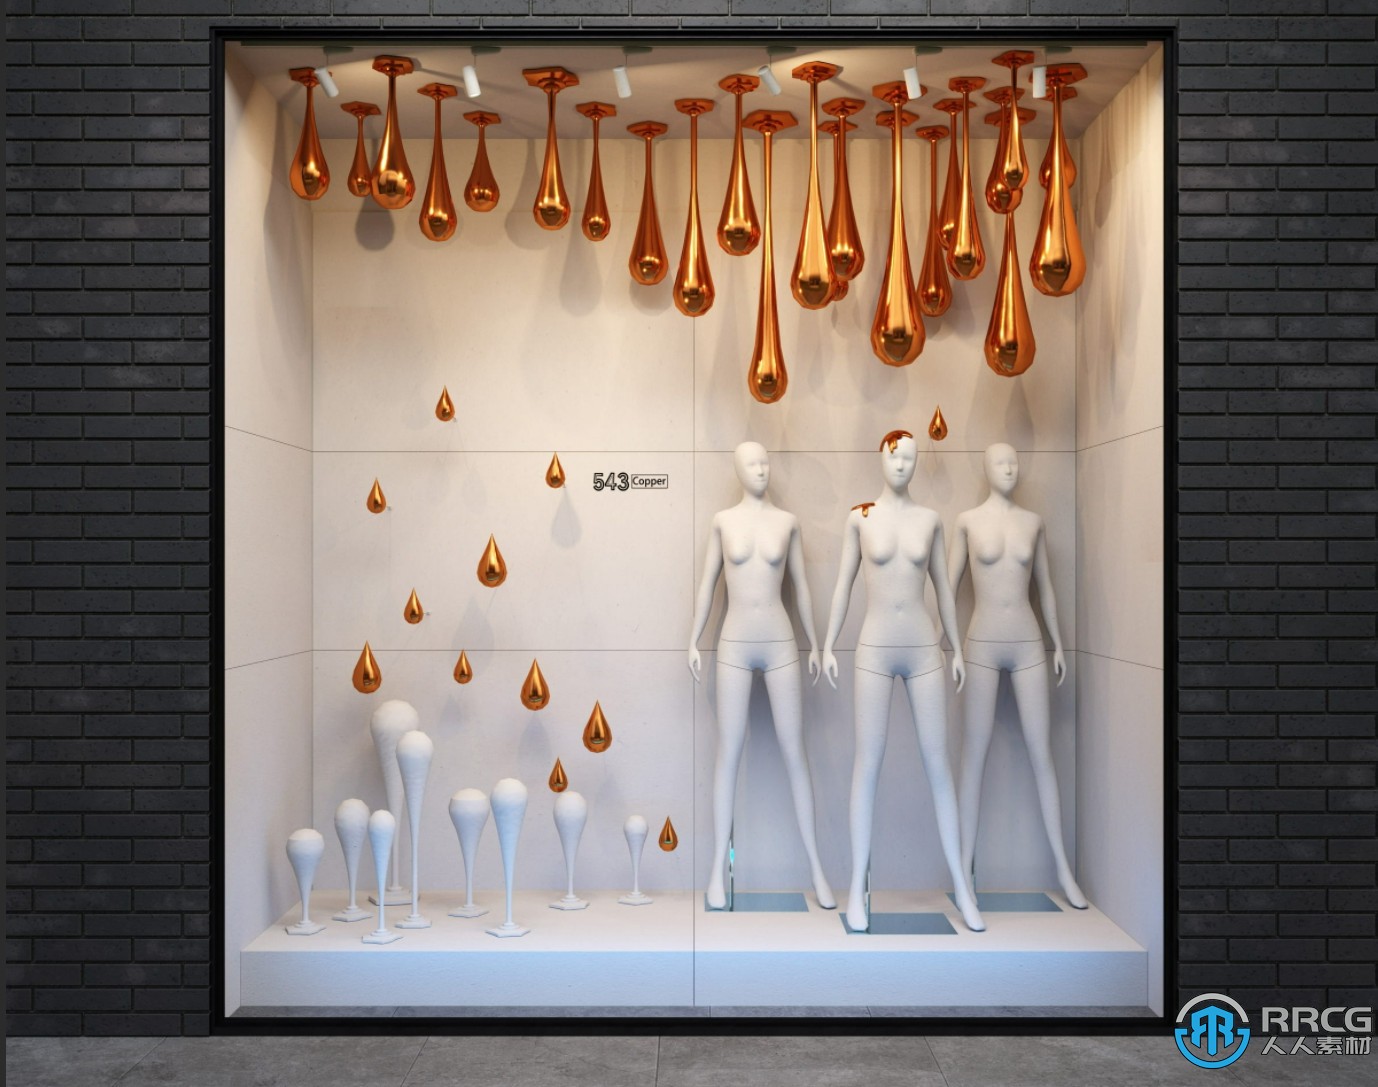 36组高品质商店购物中心商业街陈设展示窗3D模型合集 Evermotion Archmodels第239季